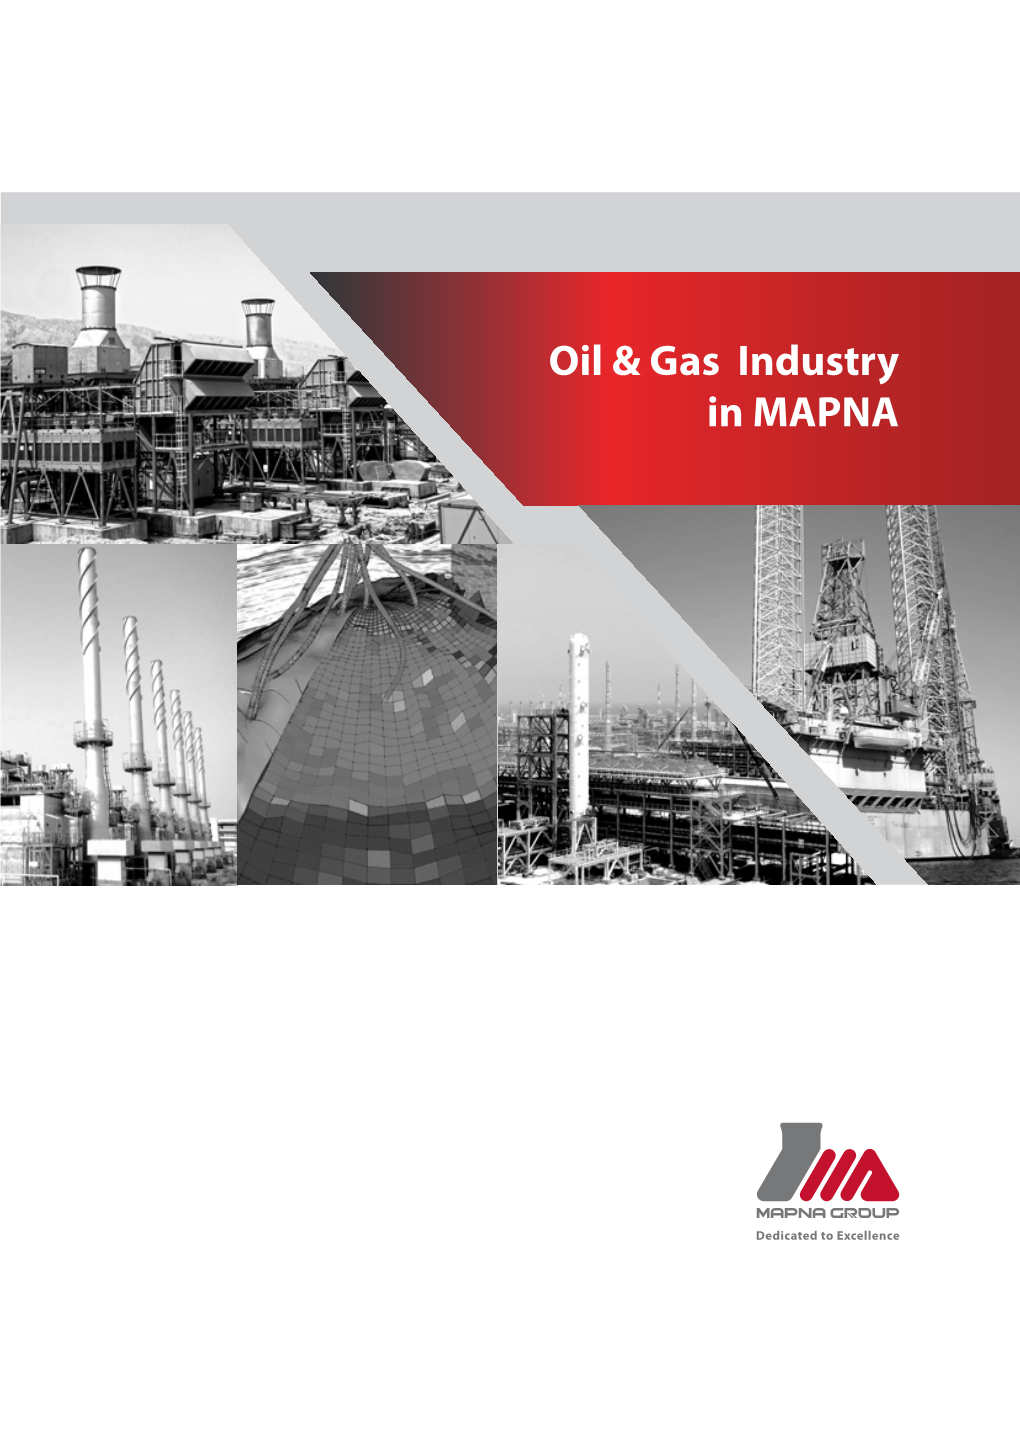 Oil & Gas Industry in MAPNA